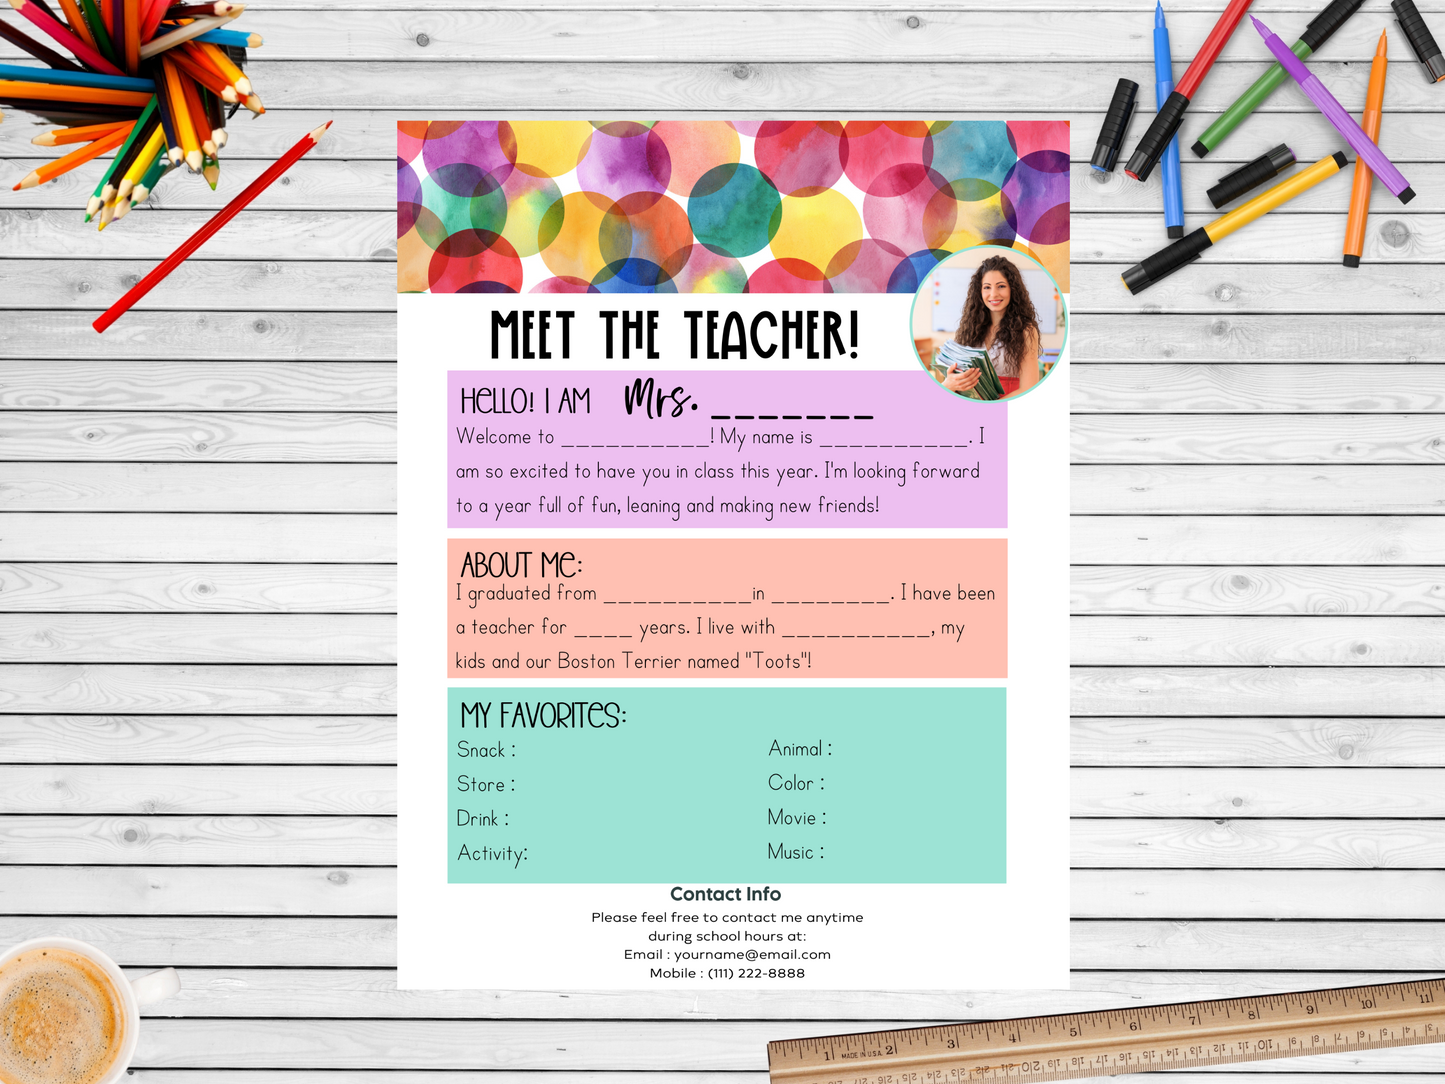 Meet the Teacher Letter Template - Dots